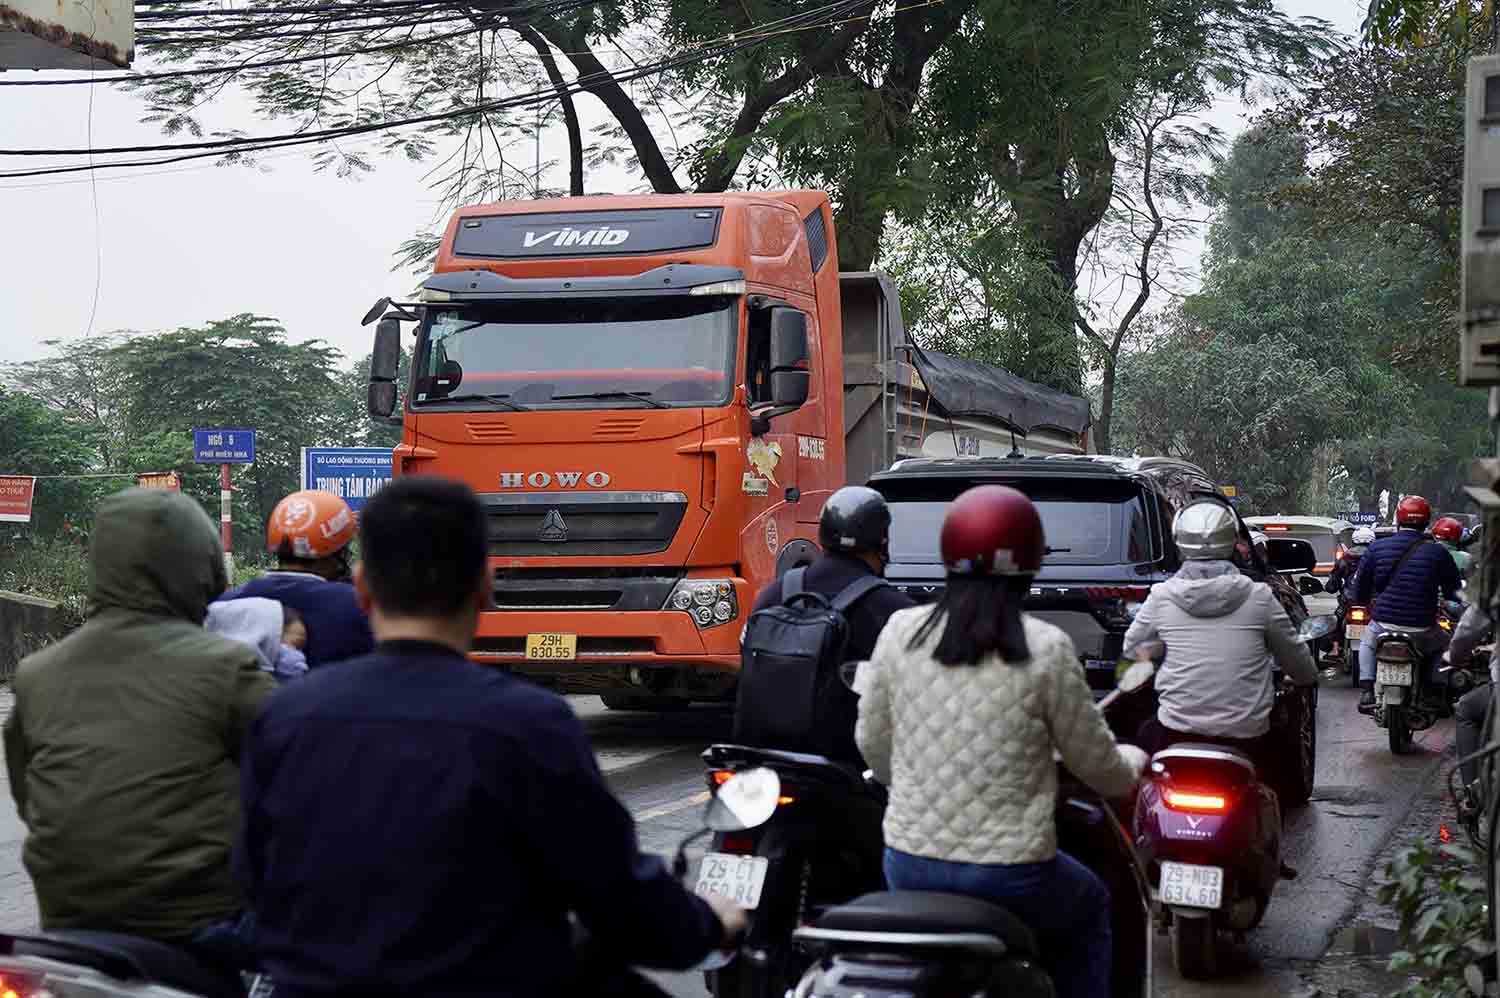 Người dân thường xuyên di chuyển qua đây ví đường 70 như “con đường tử thần” ở Hà Nội bởi ngoài những vụ tai nạn nghiêm trọng, va quẹt nhẹ giữa các xe xảy ra “như cơm bữa” ở đoạn đường trên.